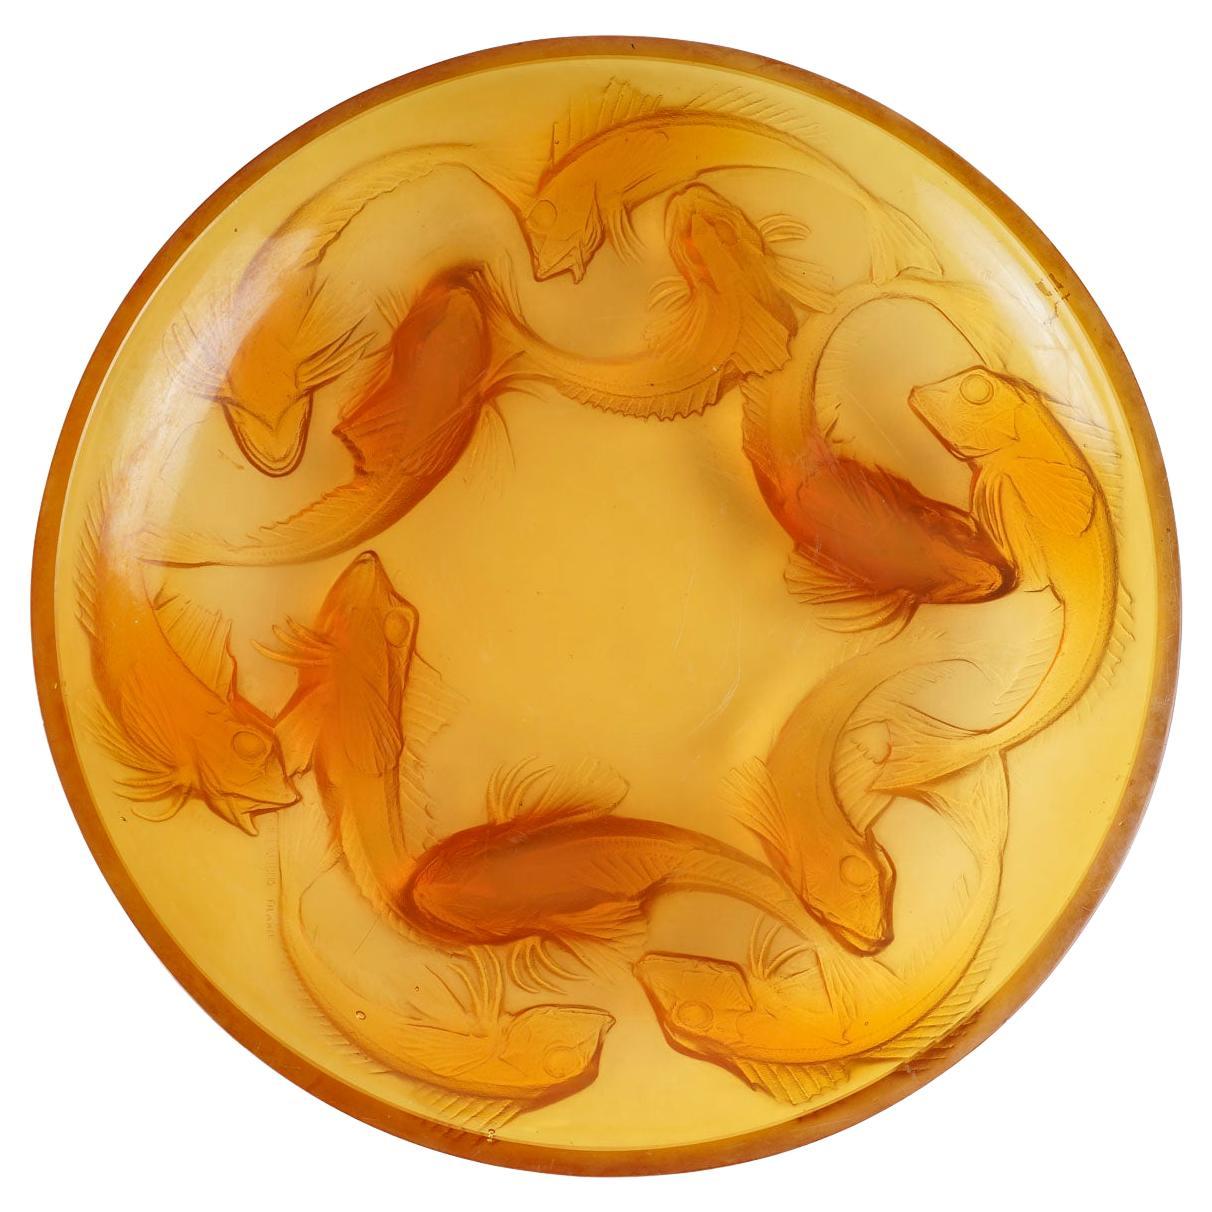 René LALIQUE, "Martigues" Pressed-Molded Butterscotch Glass Dish.